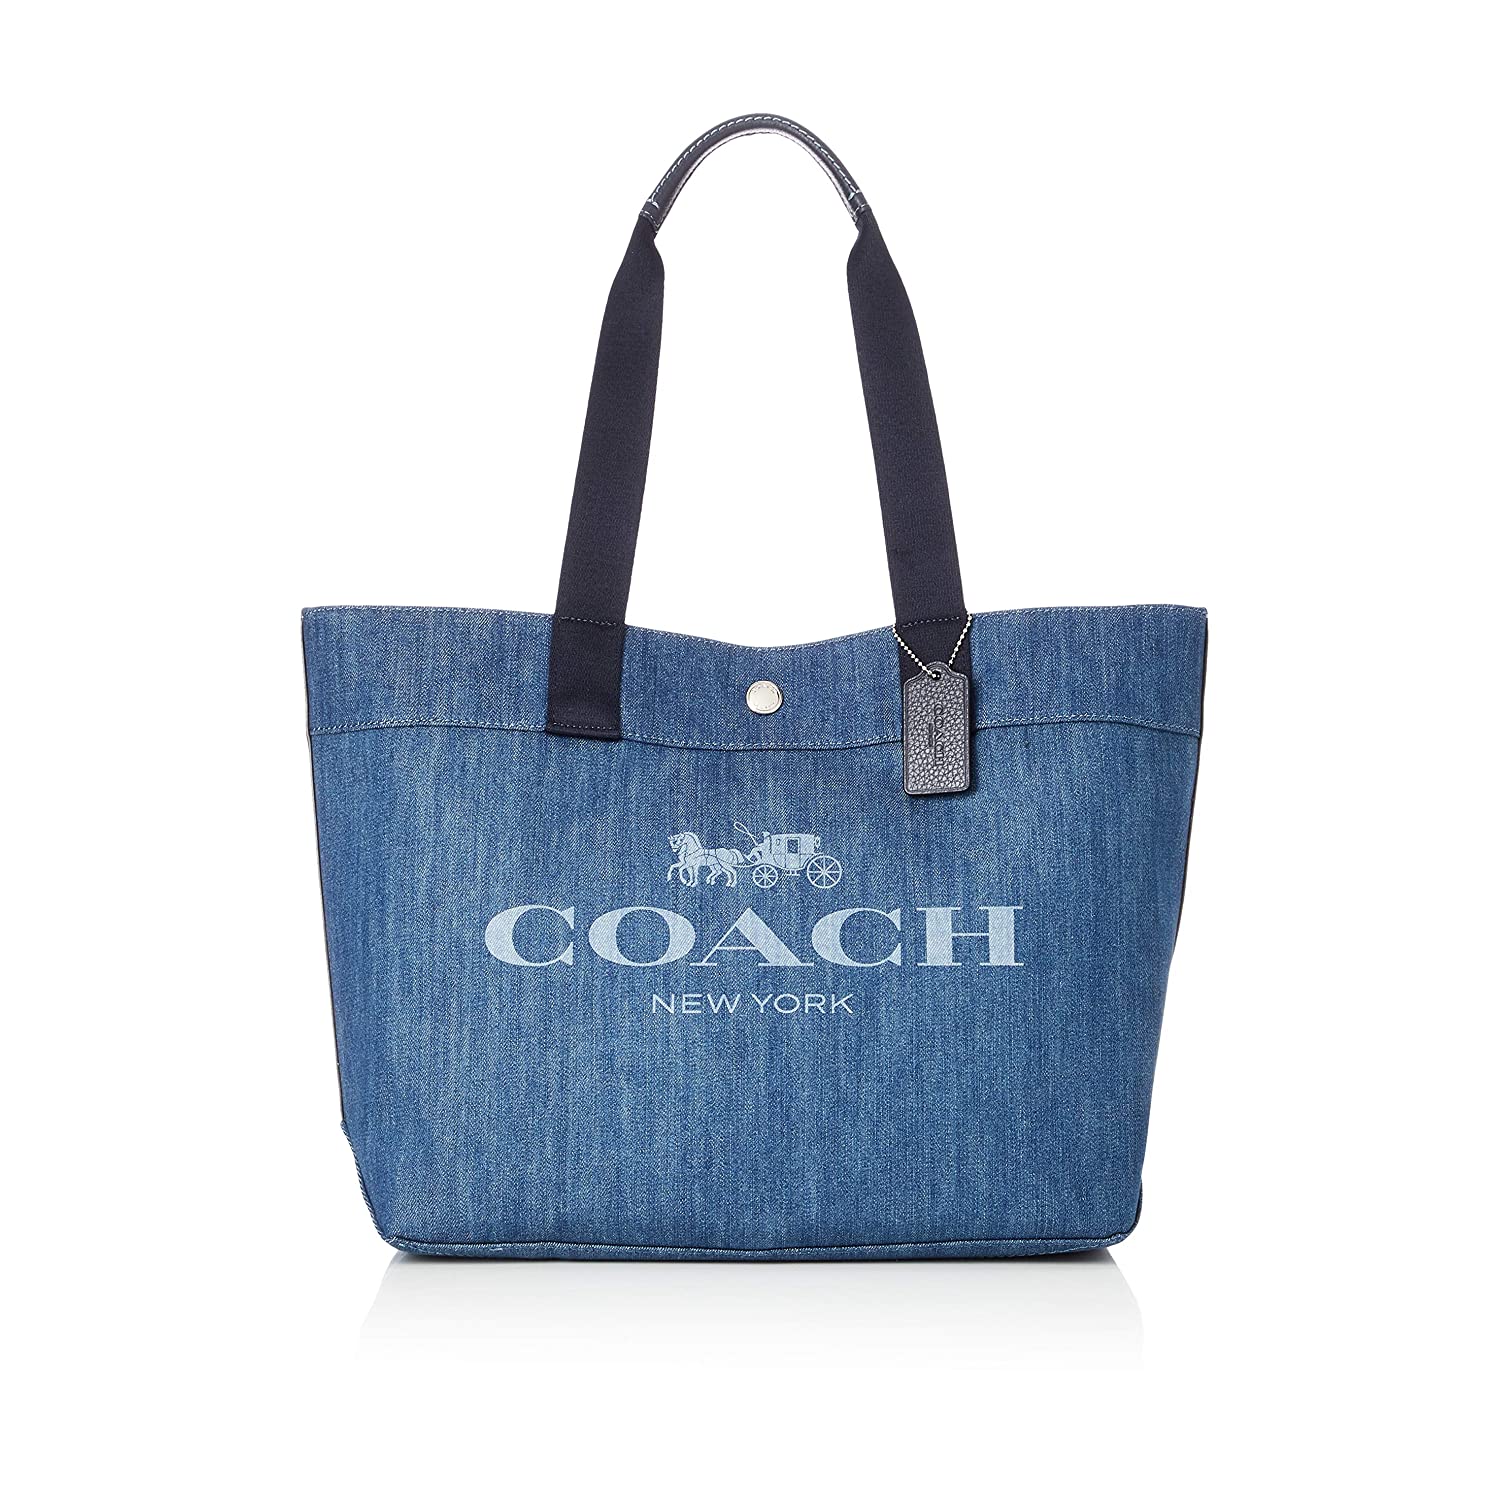 「COACH（コーチ）のバッグ」おすすめ6選 人気のキャンバス 